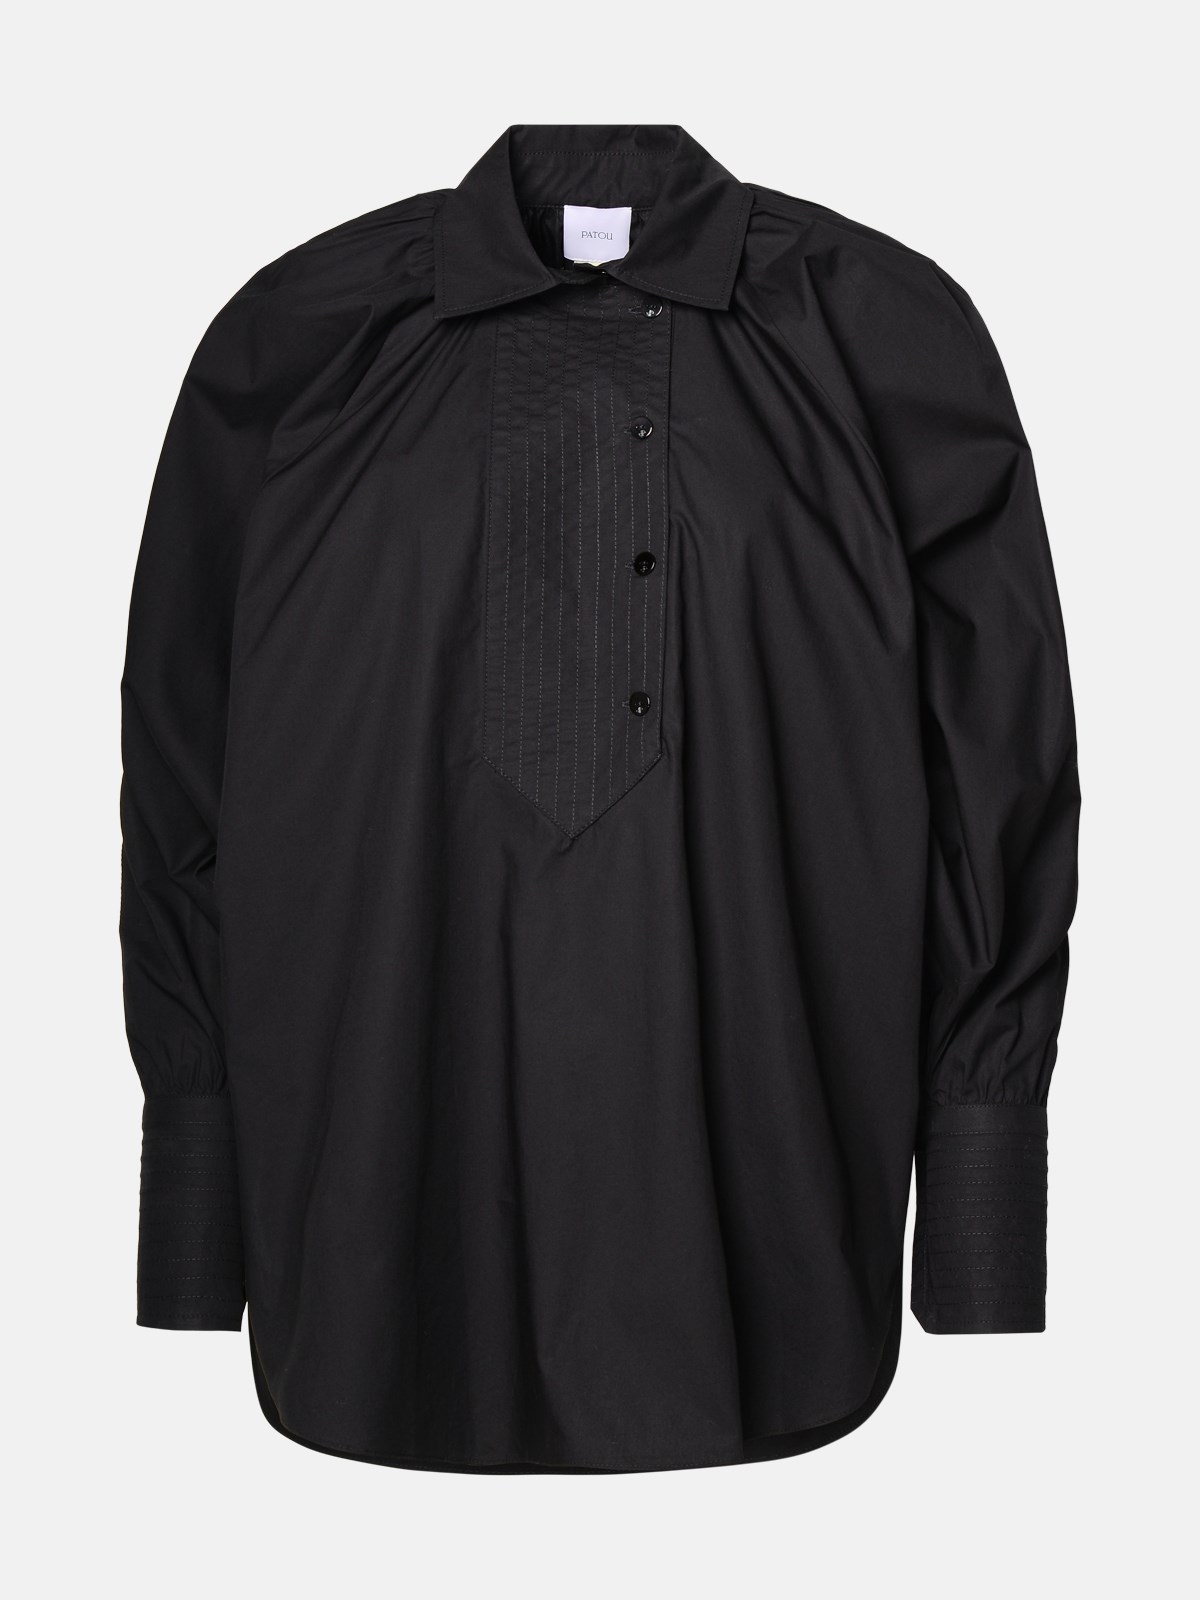 Patou Black Cotton Shirt